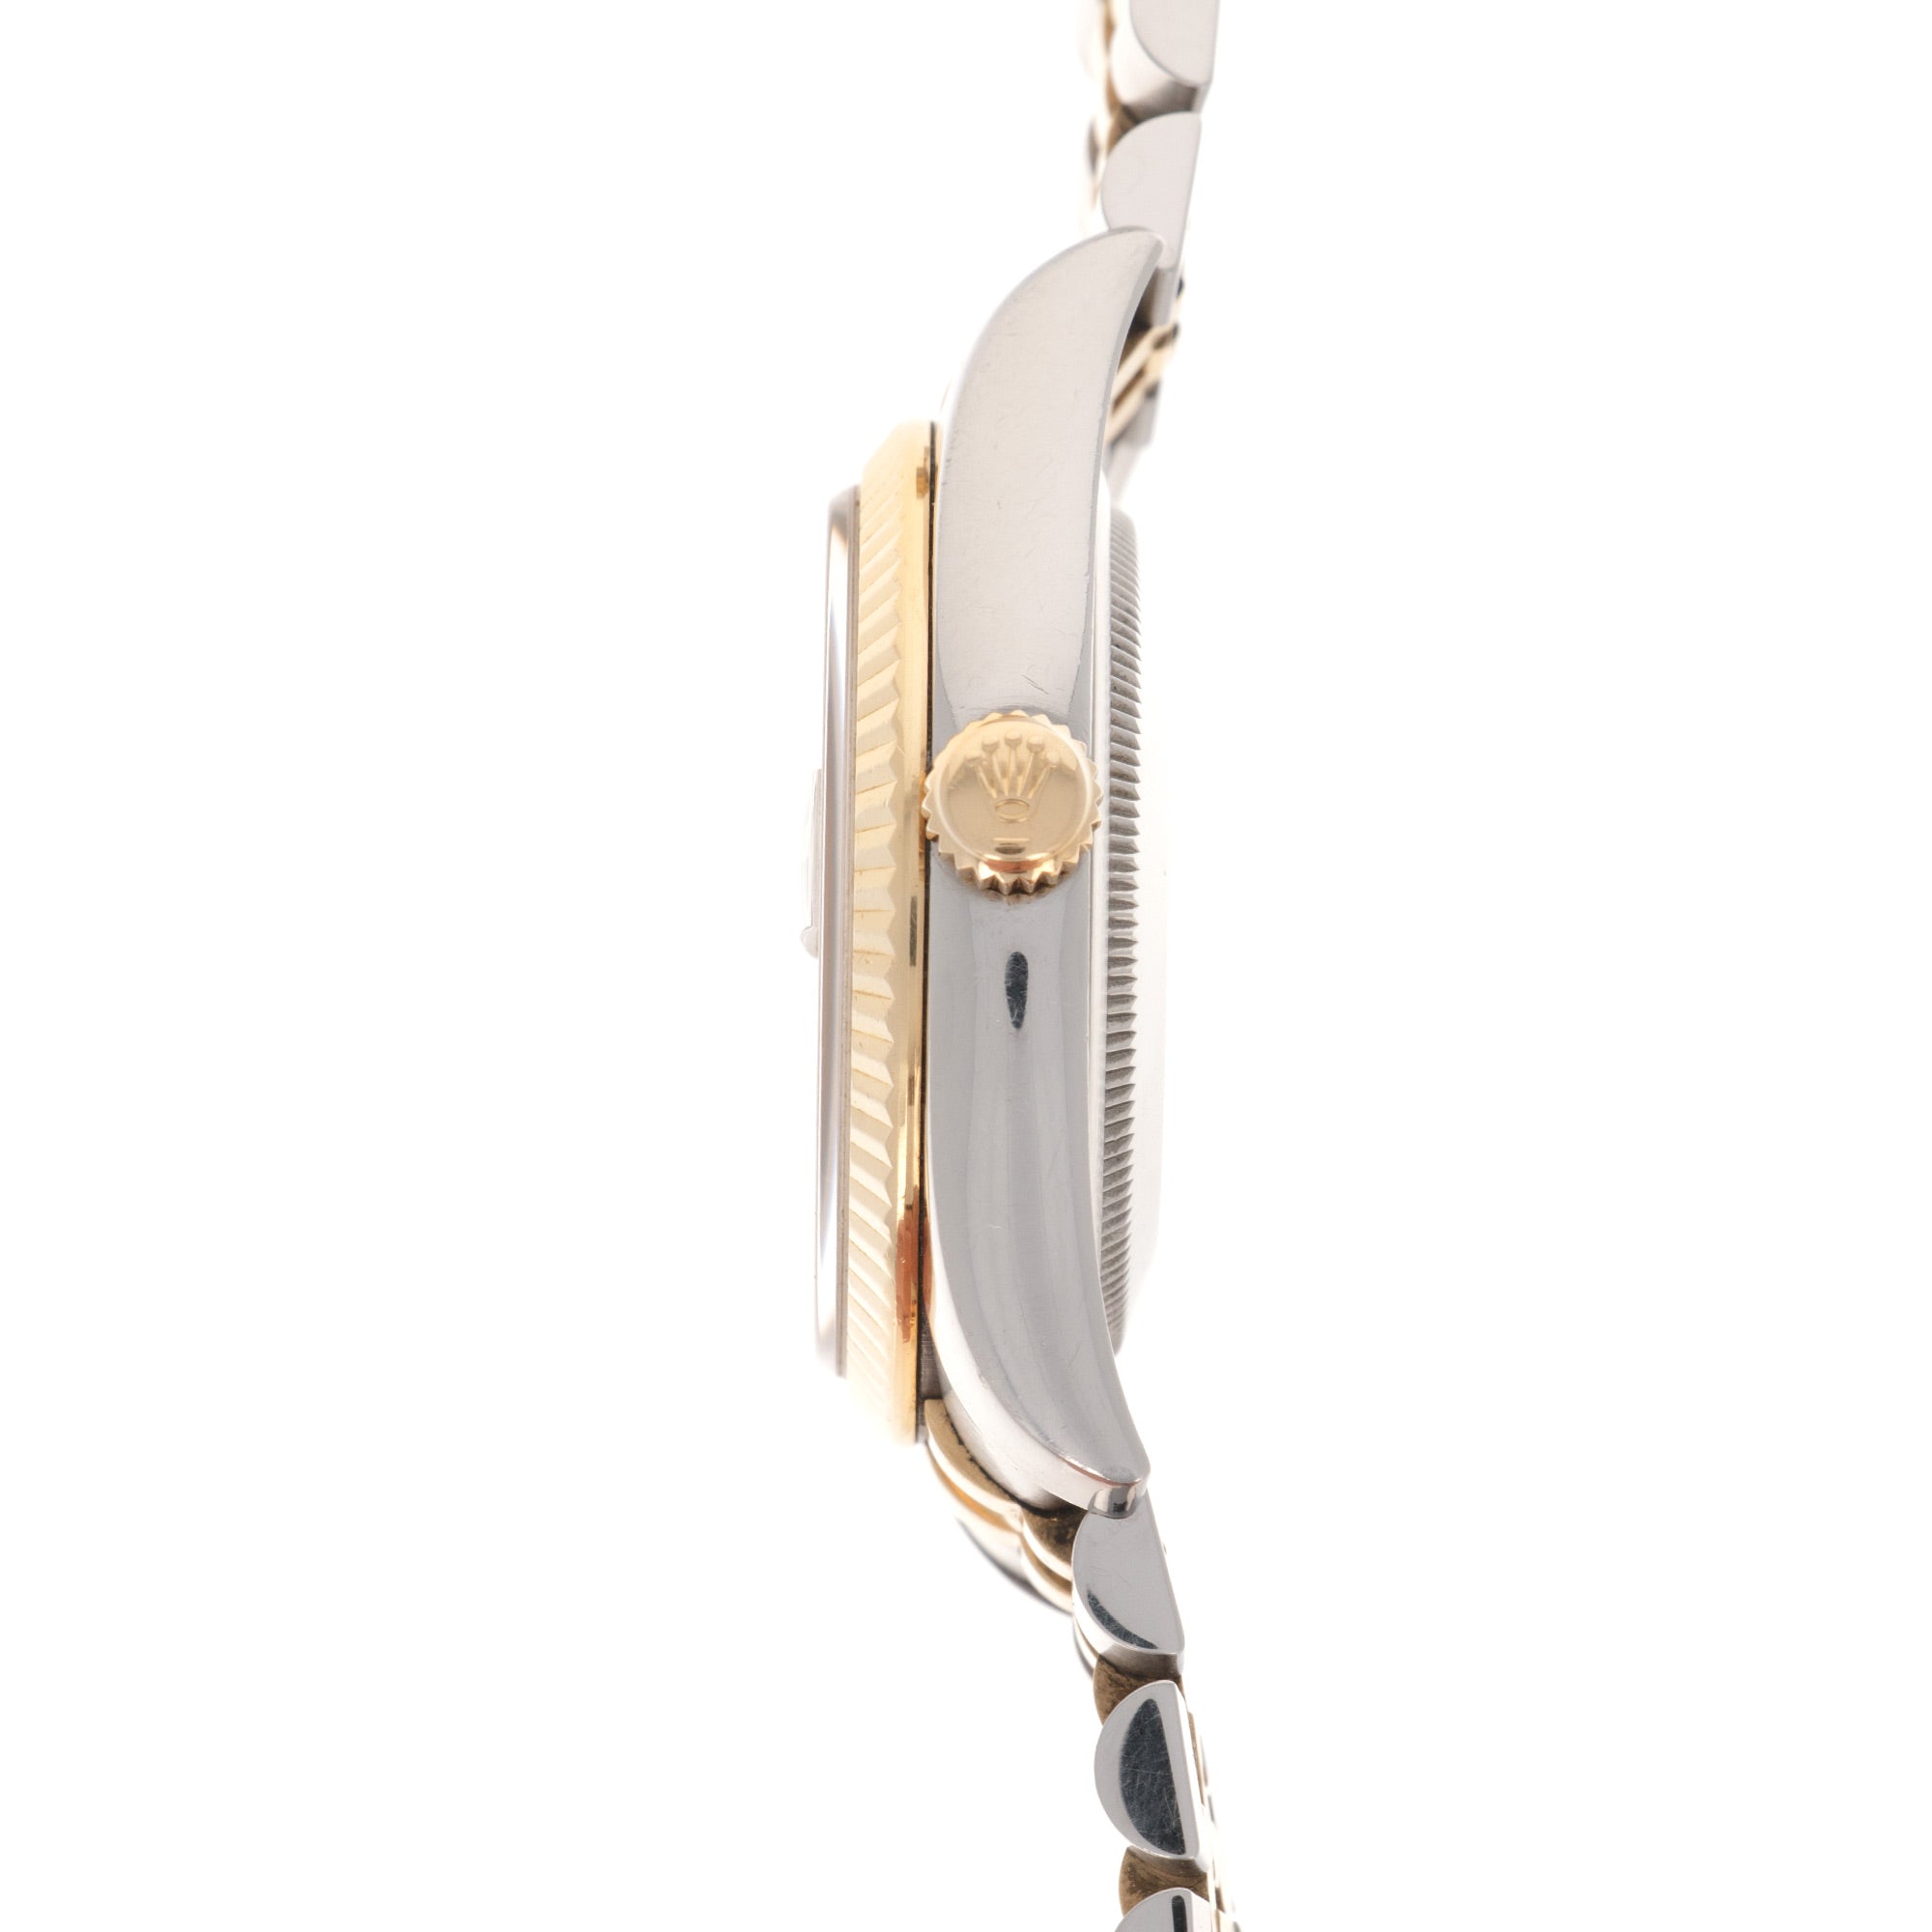 Rolex - Rolex Two-Tone Datejust Onyx Diamond Watch Ref. 116233 - The Keystone Watches